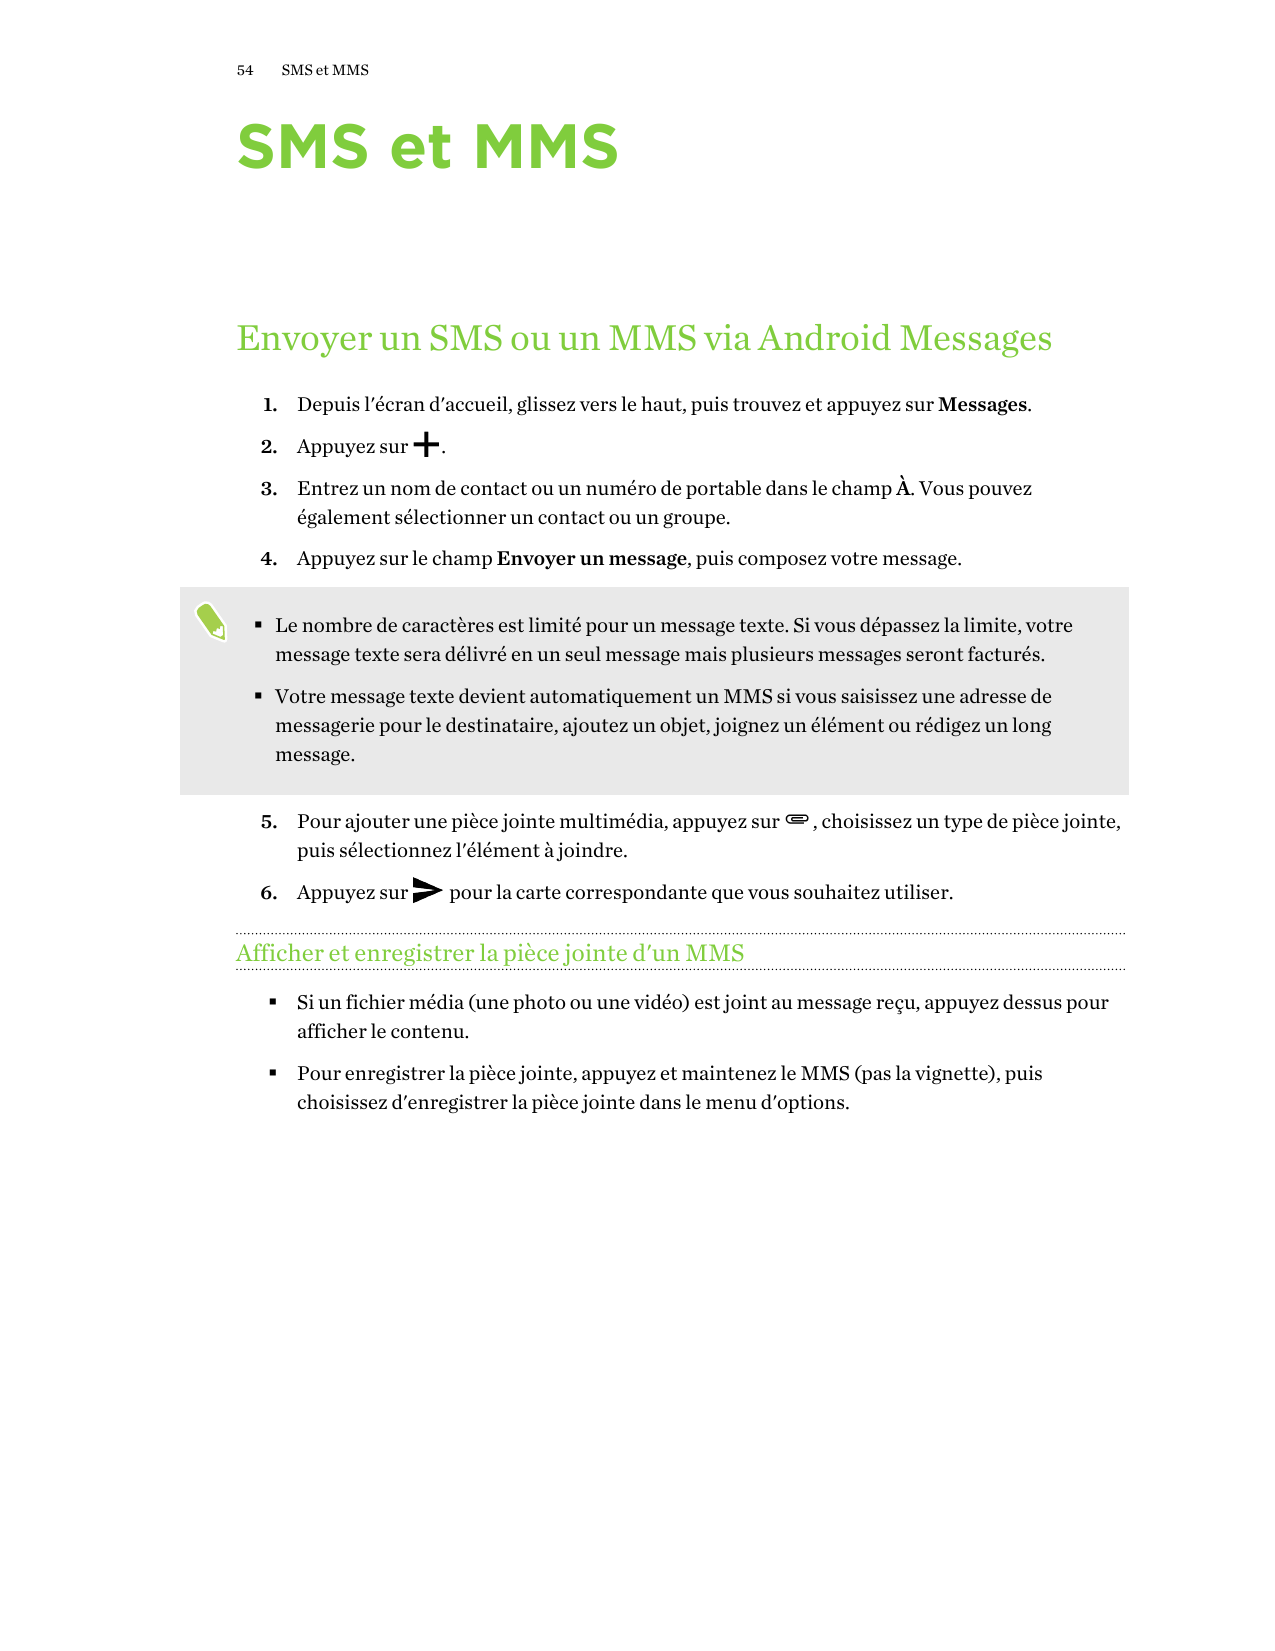 54SMS et MMSSMS et MMSEnvoyer un SMS ou un MMS via Android Messages1. Depuis l'écran d'accueil, glissez vers le haut, puis trouv